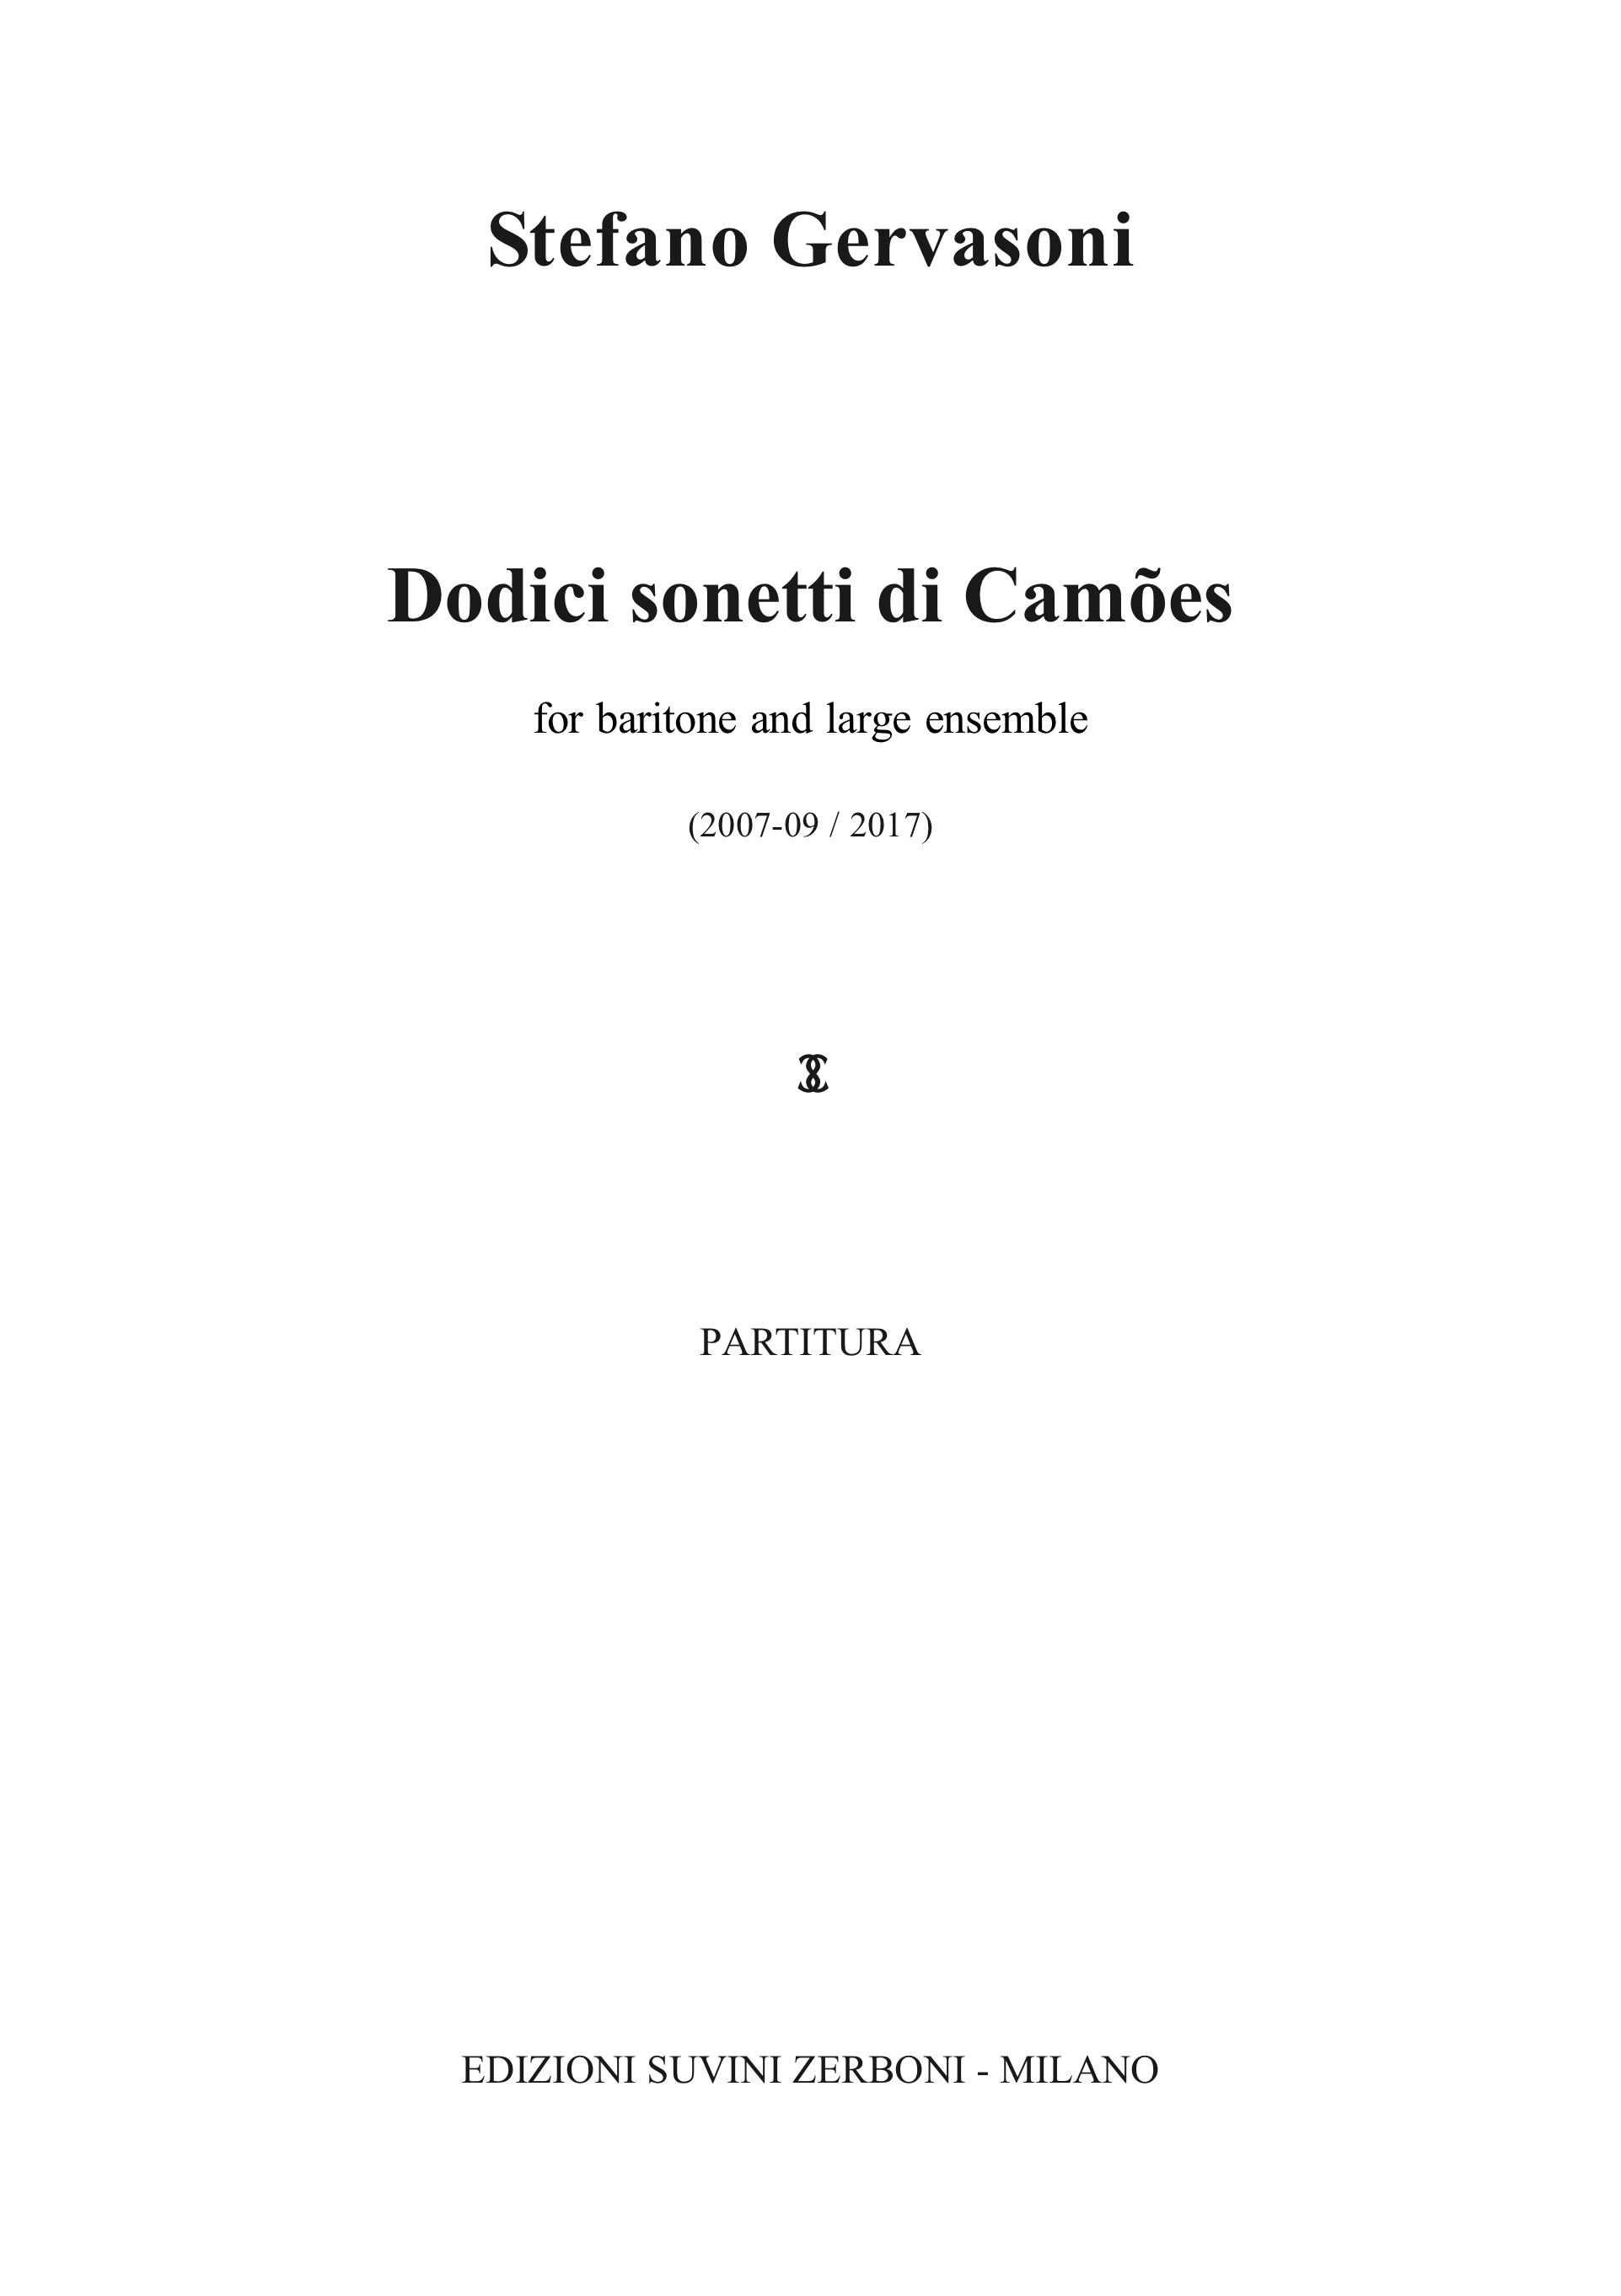 Dodici sonetti di Camoes_Gervasoni 1